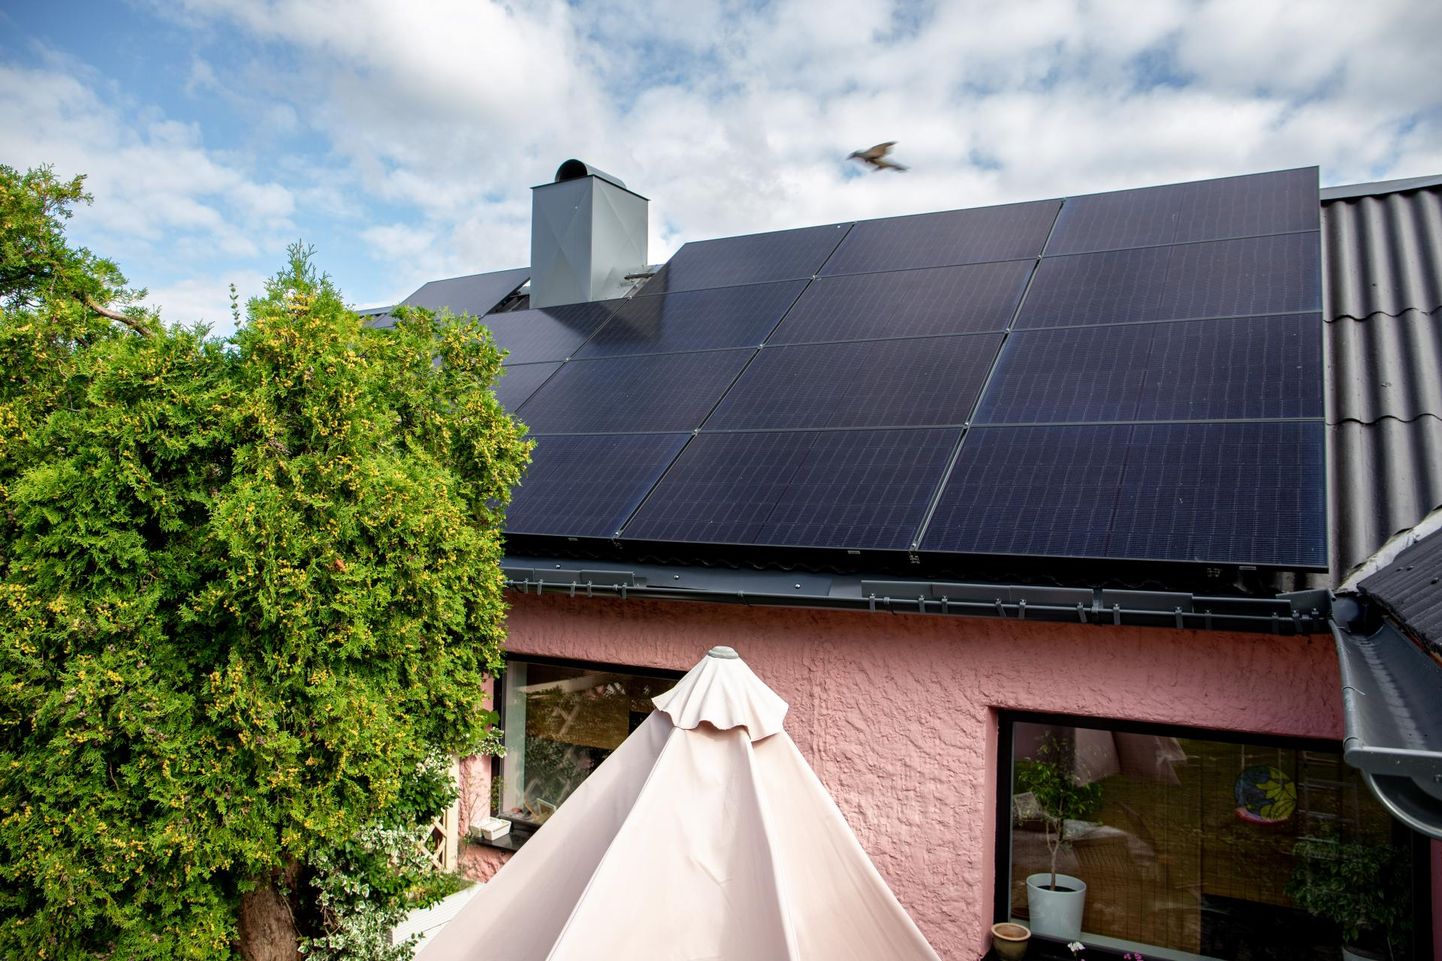 Ats Rääk leiab, et päikesepaneelid teevad tema katuse ilusamaks ja peale elektritootmise pakuvad ka varju päikeselõõsa eest.